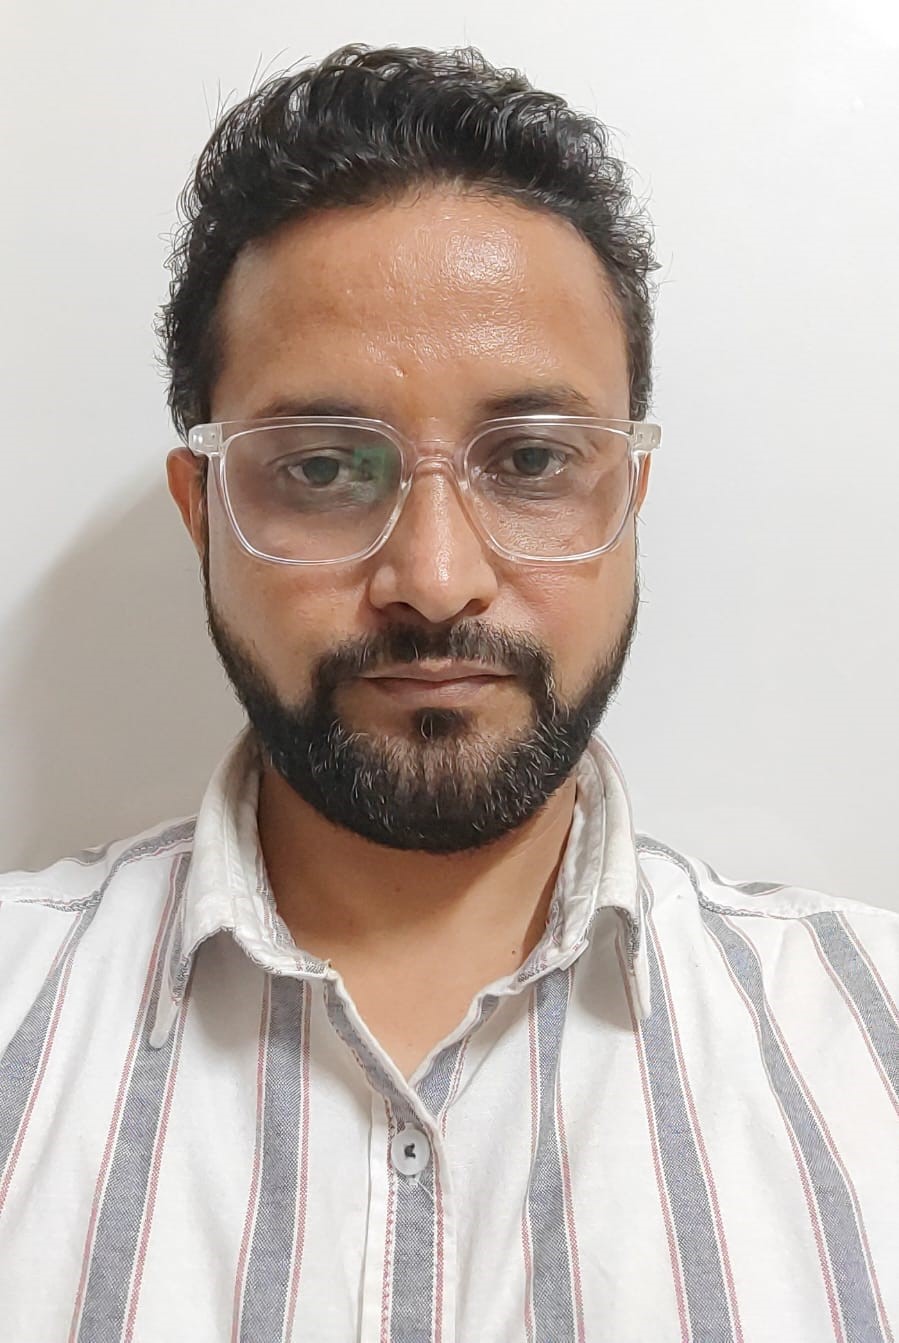 Dr. Sanjeev Kumar Shrivastava